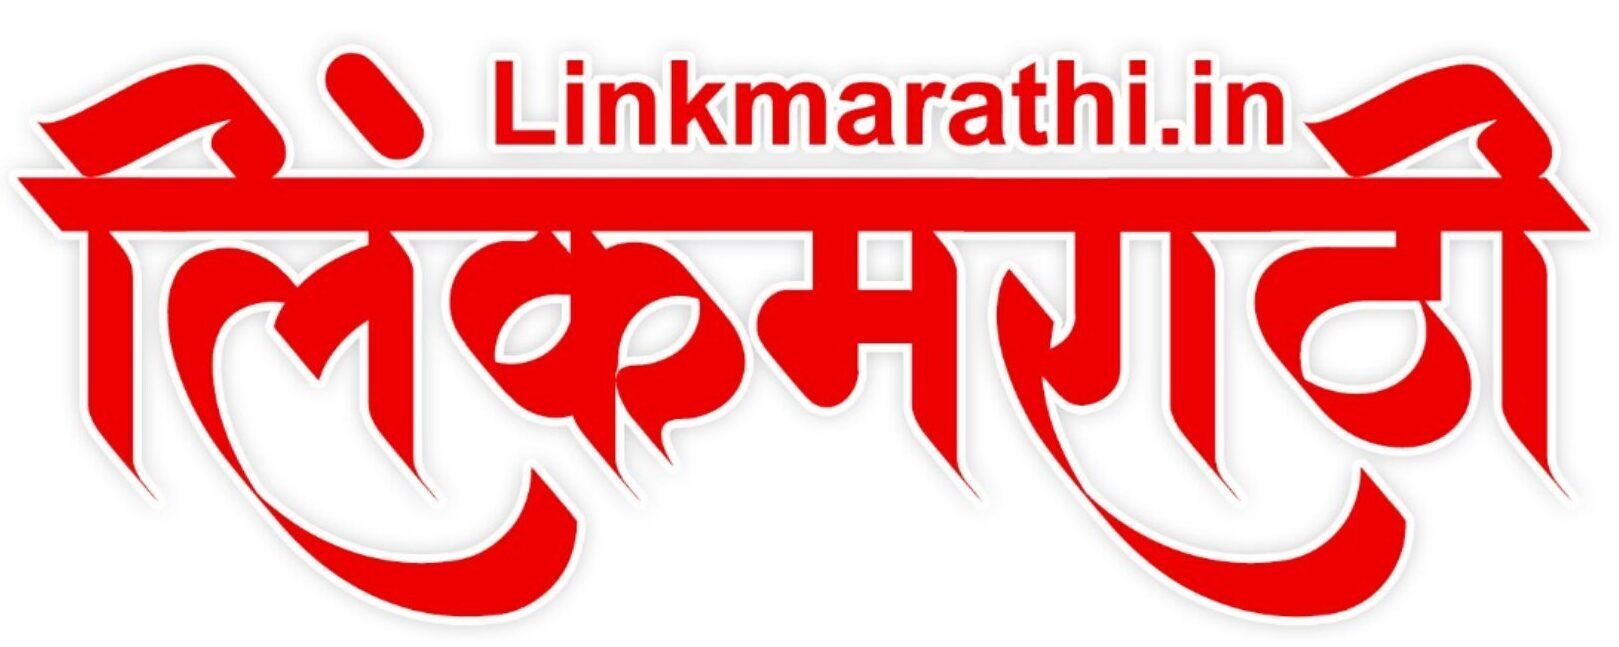 diwali essay writing in marathi